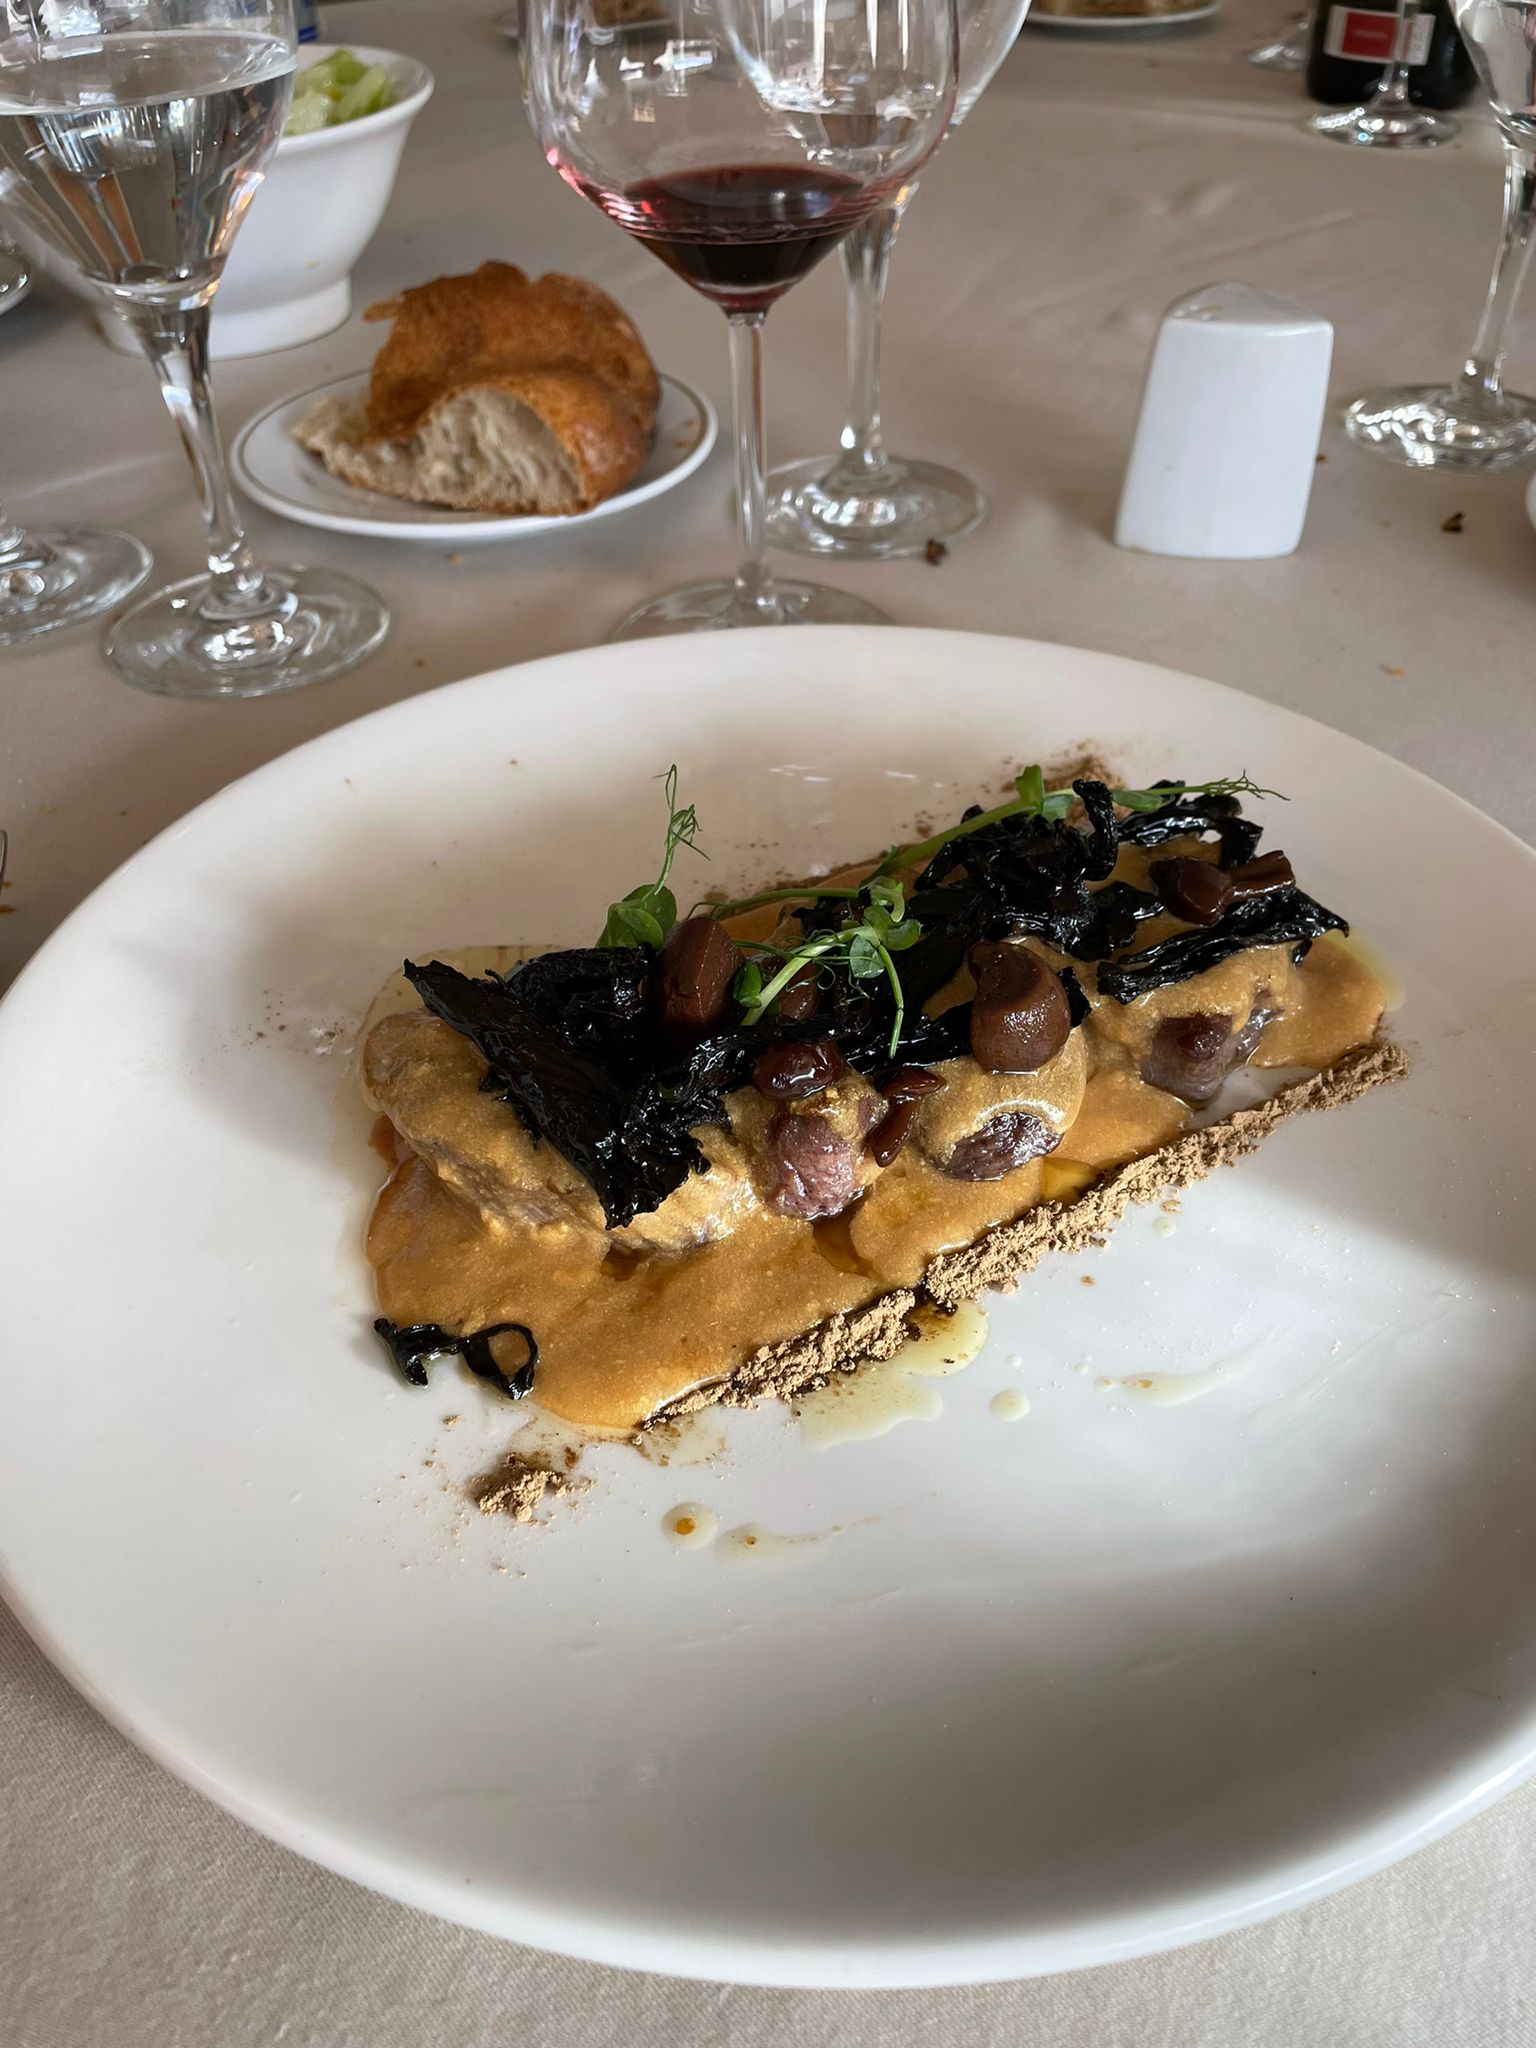 Reseñas gastronómicas: Asador Restaurante La Galería de Burgos 77